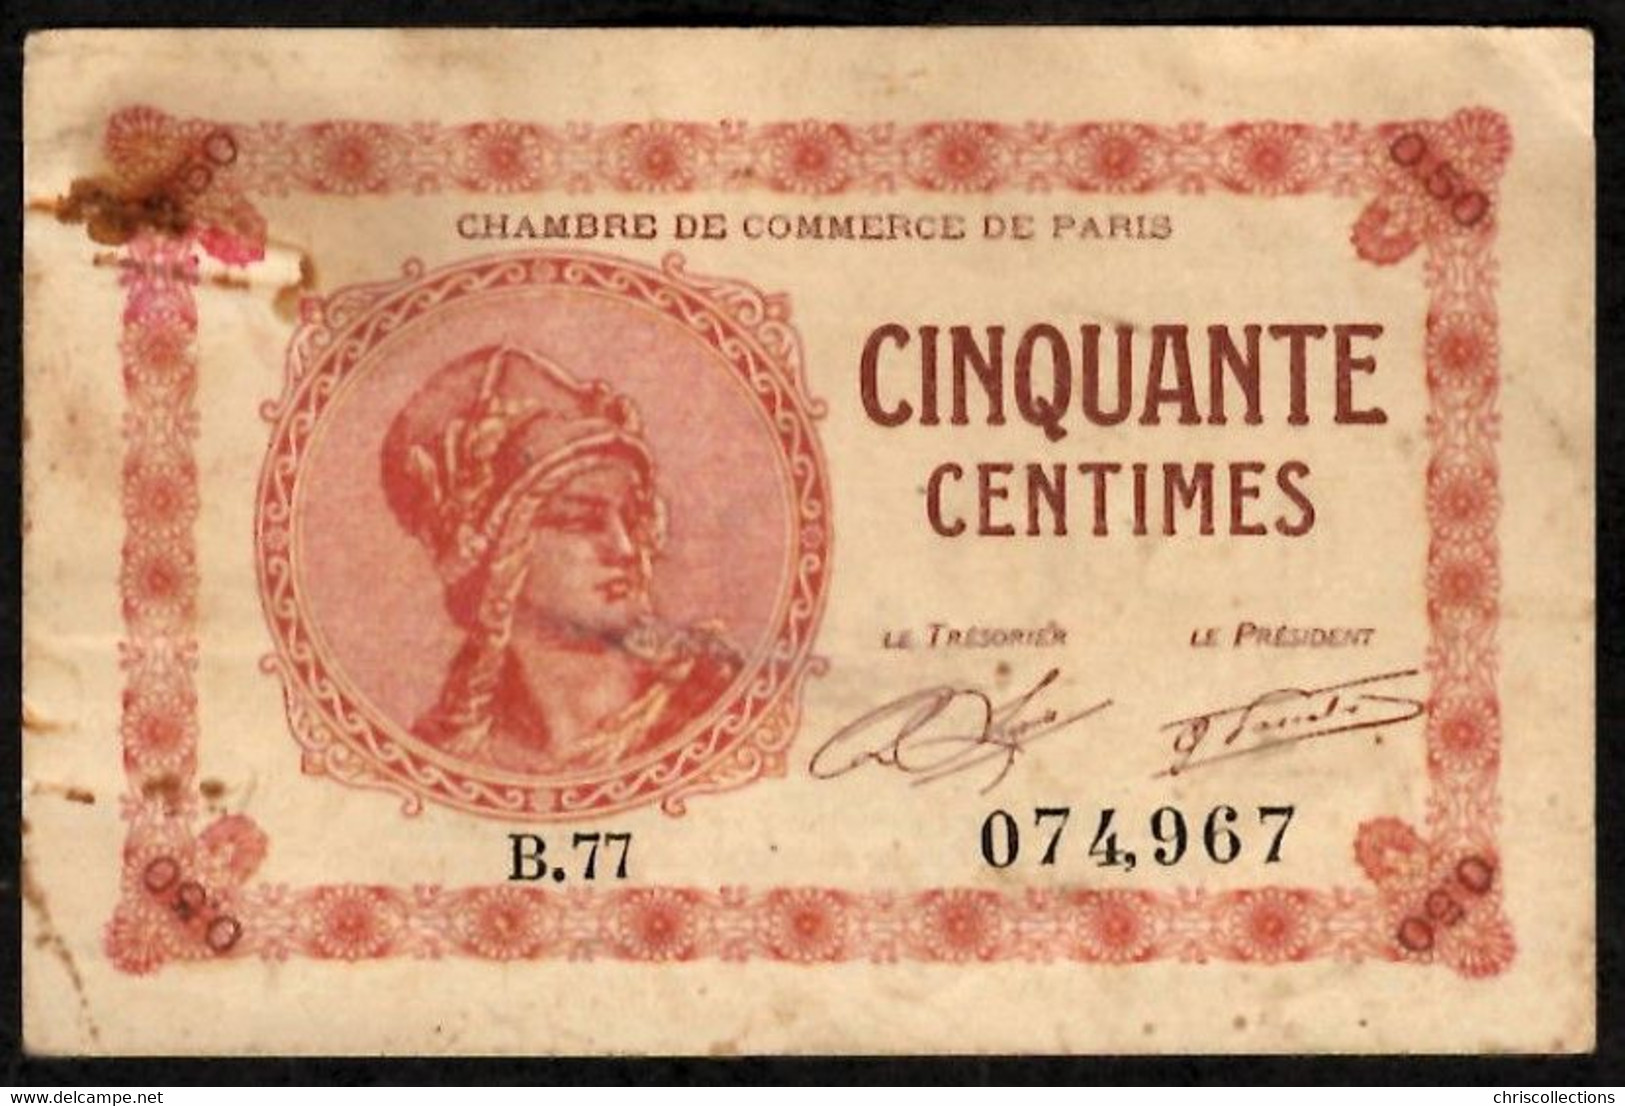 FRANCE - Billet Cinquante Centimes Chambre De Commerce De Paris - N°074967 - Chambre De Commerce